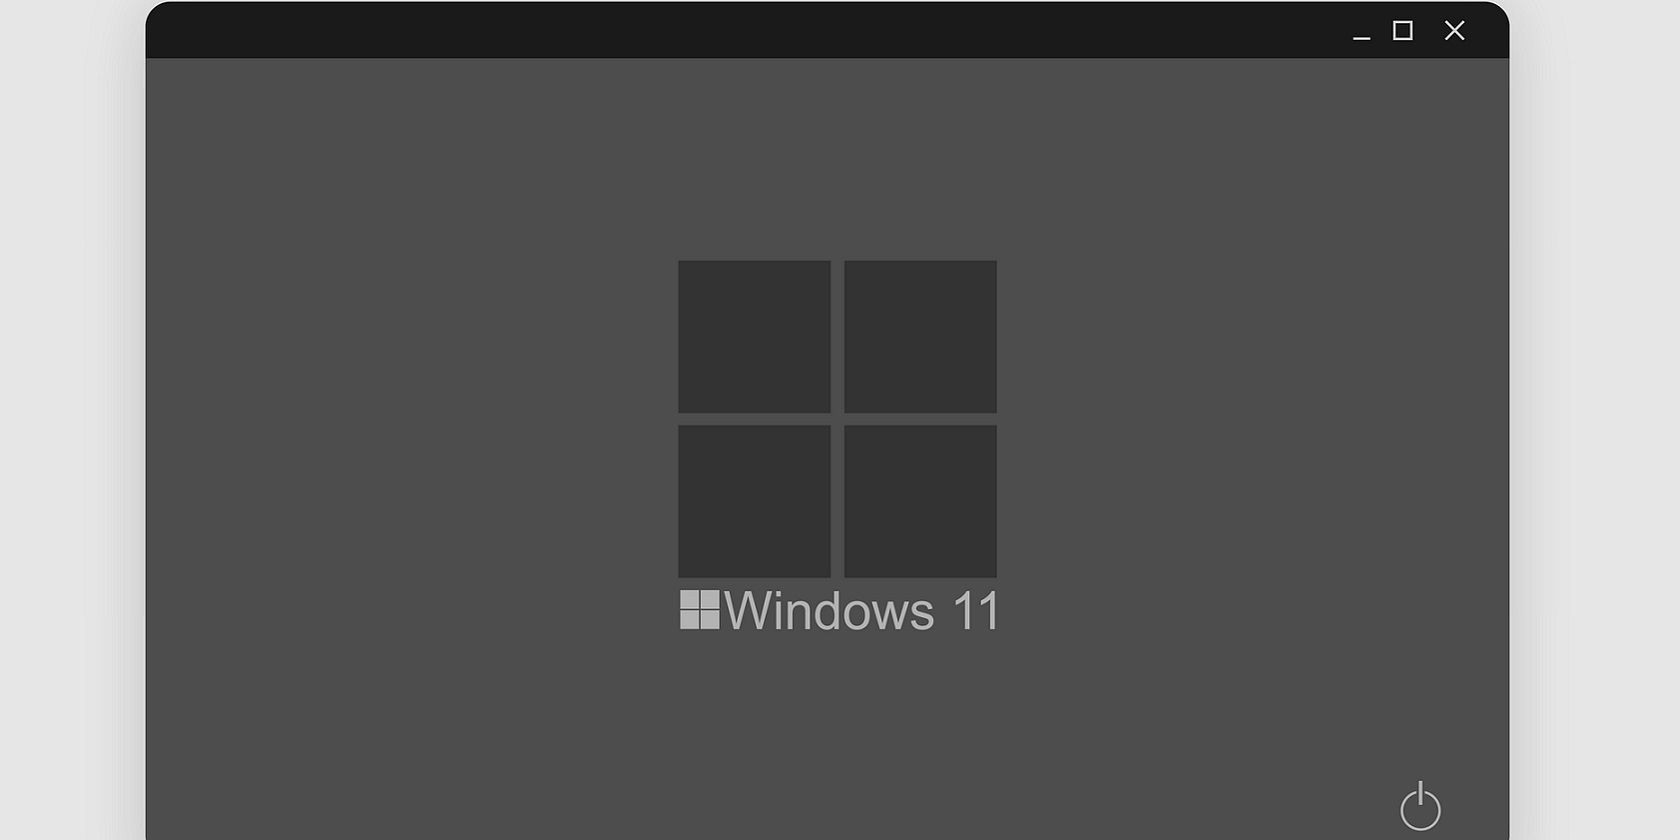 A Windows 11 logo